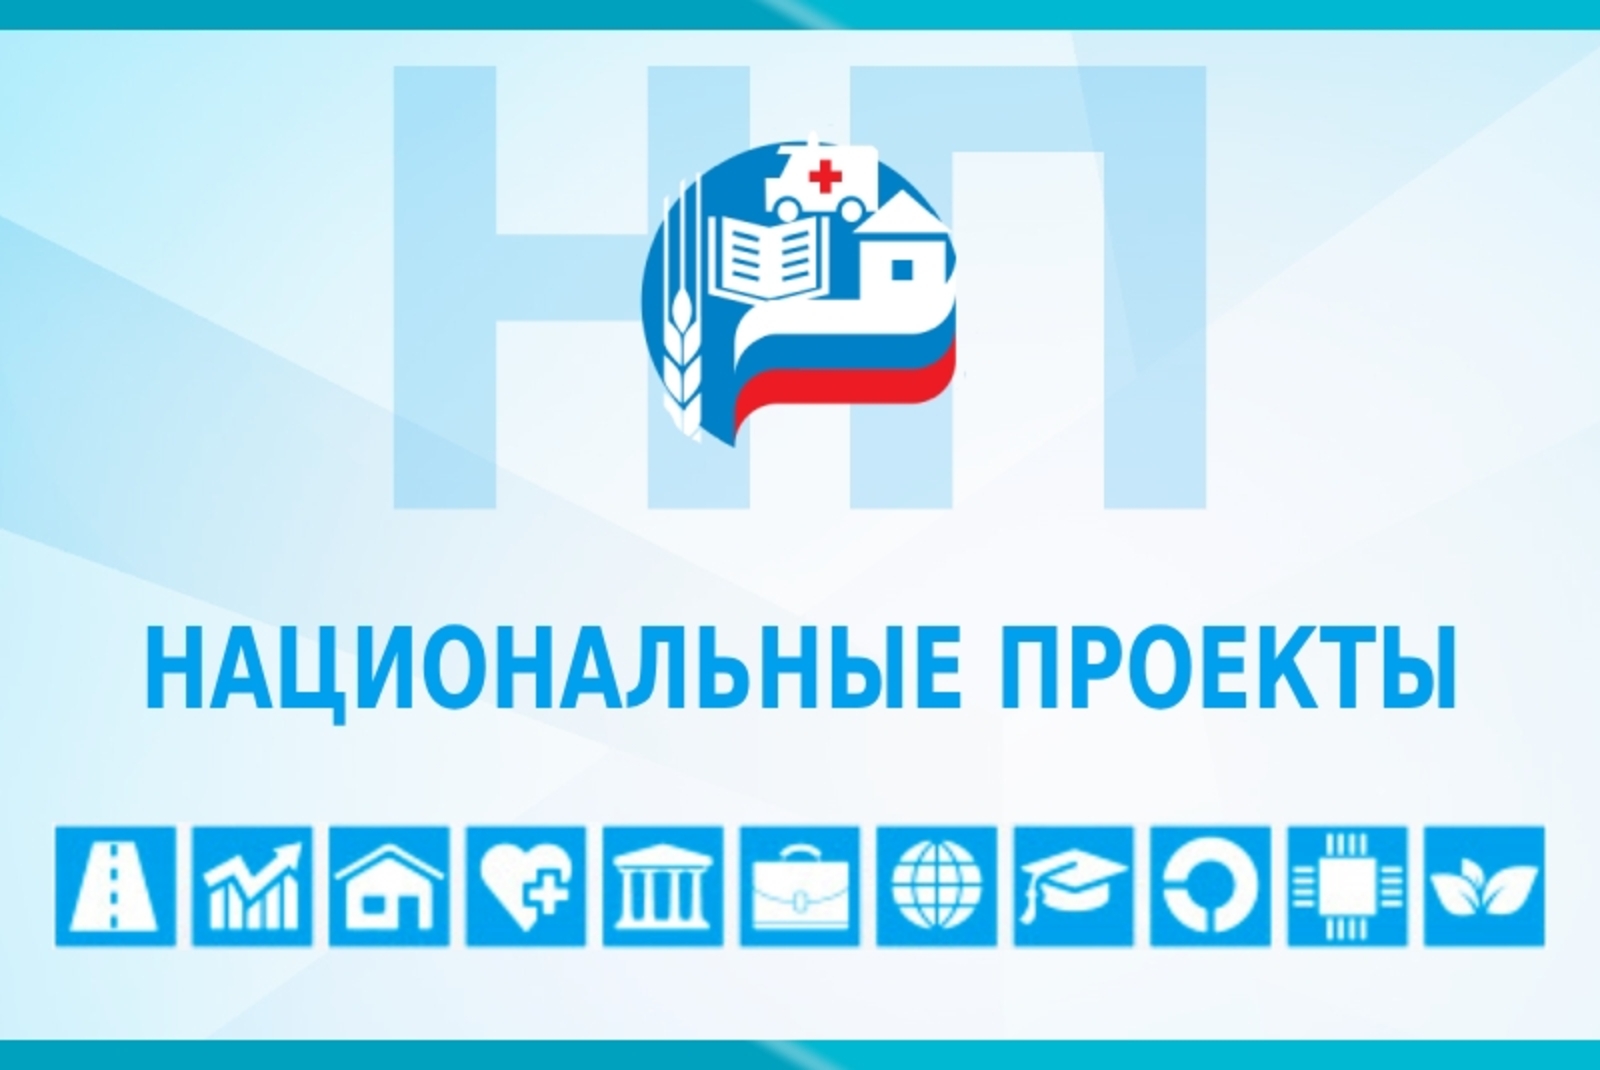 Благодаря нацпроекту в Башкортостане обновлено 40 подъездов к сельским населенным пунктам